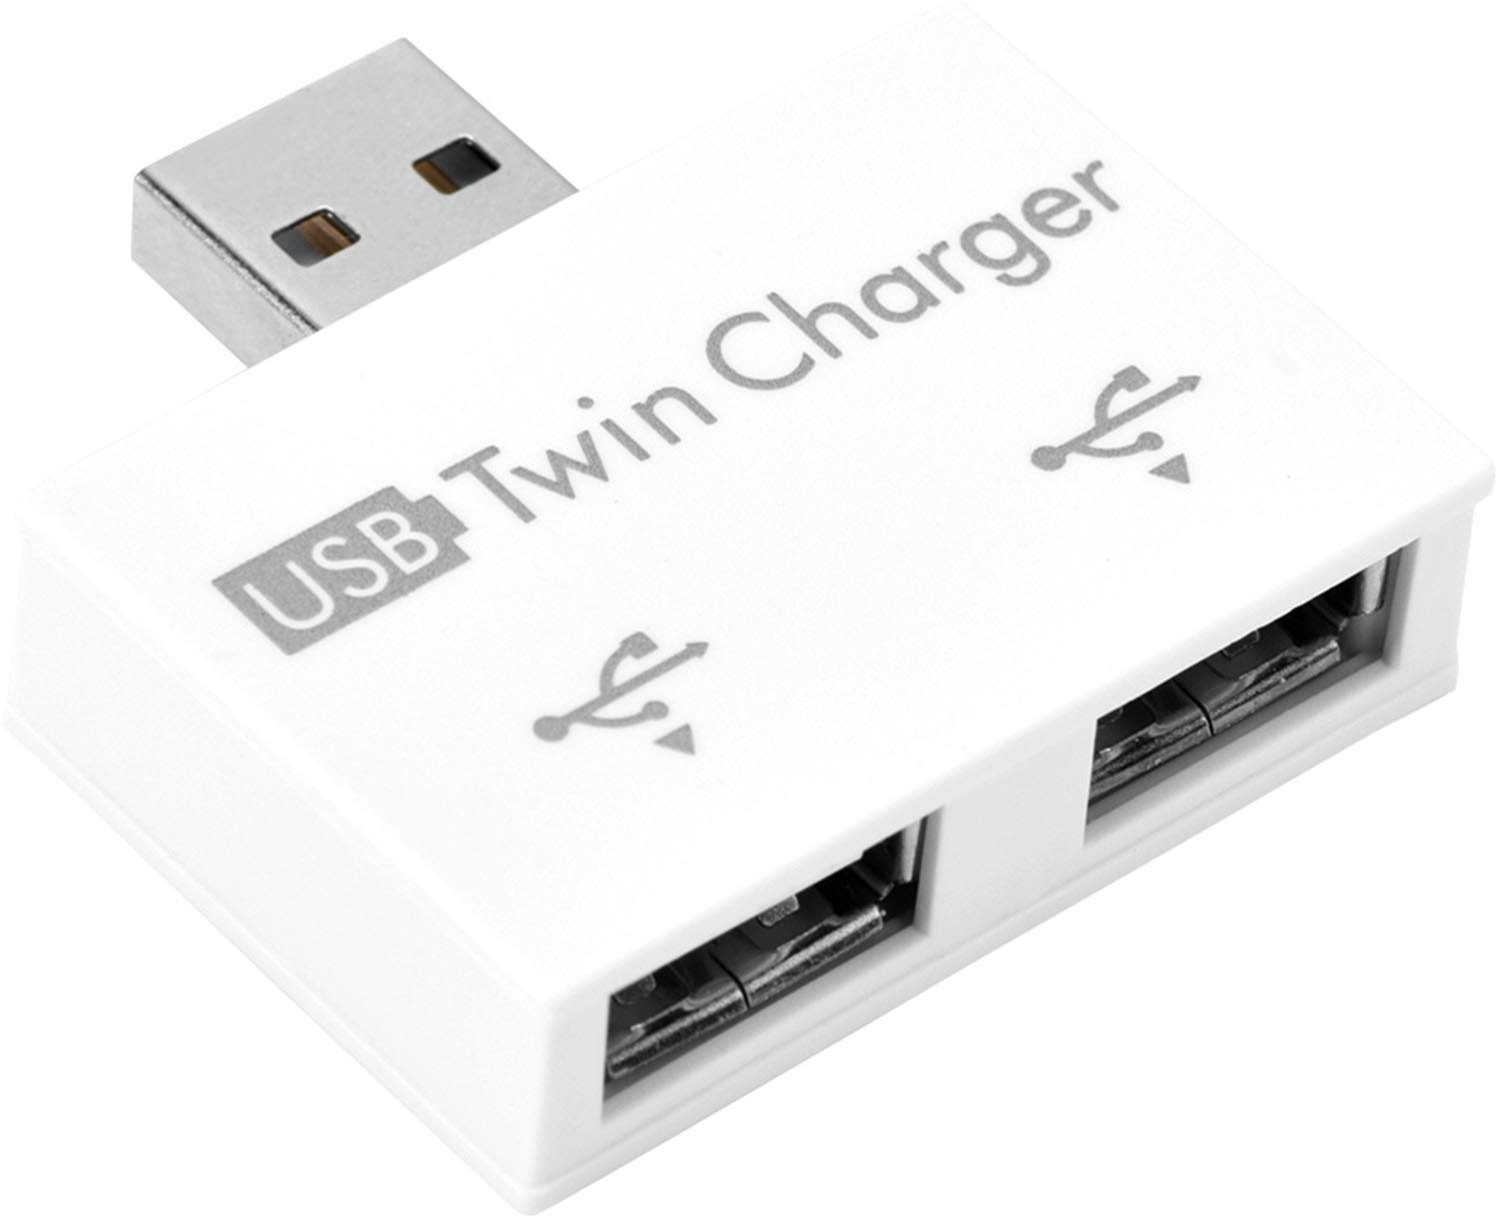 Mini 2.0 USB-Hub-Adapter, 2 Anschlüsse, kleiner USB-Splitter, Stecker auf 2 Buchsen, Adapter, tragbarer Daten-Hub, für Laptops, Desktops, USB-Flash-Laufwerke, Datenladen, Synchronisierung (weiß)